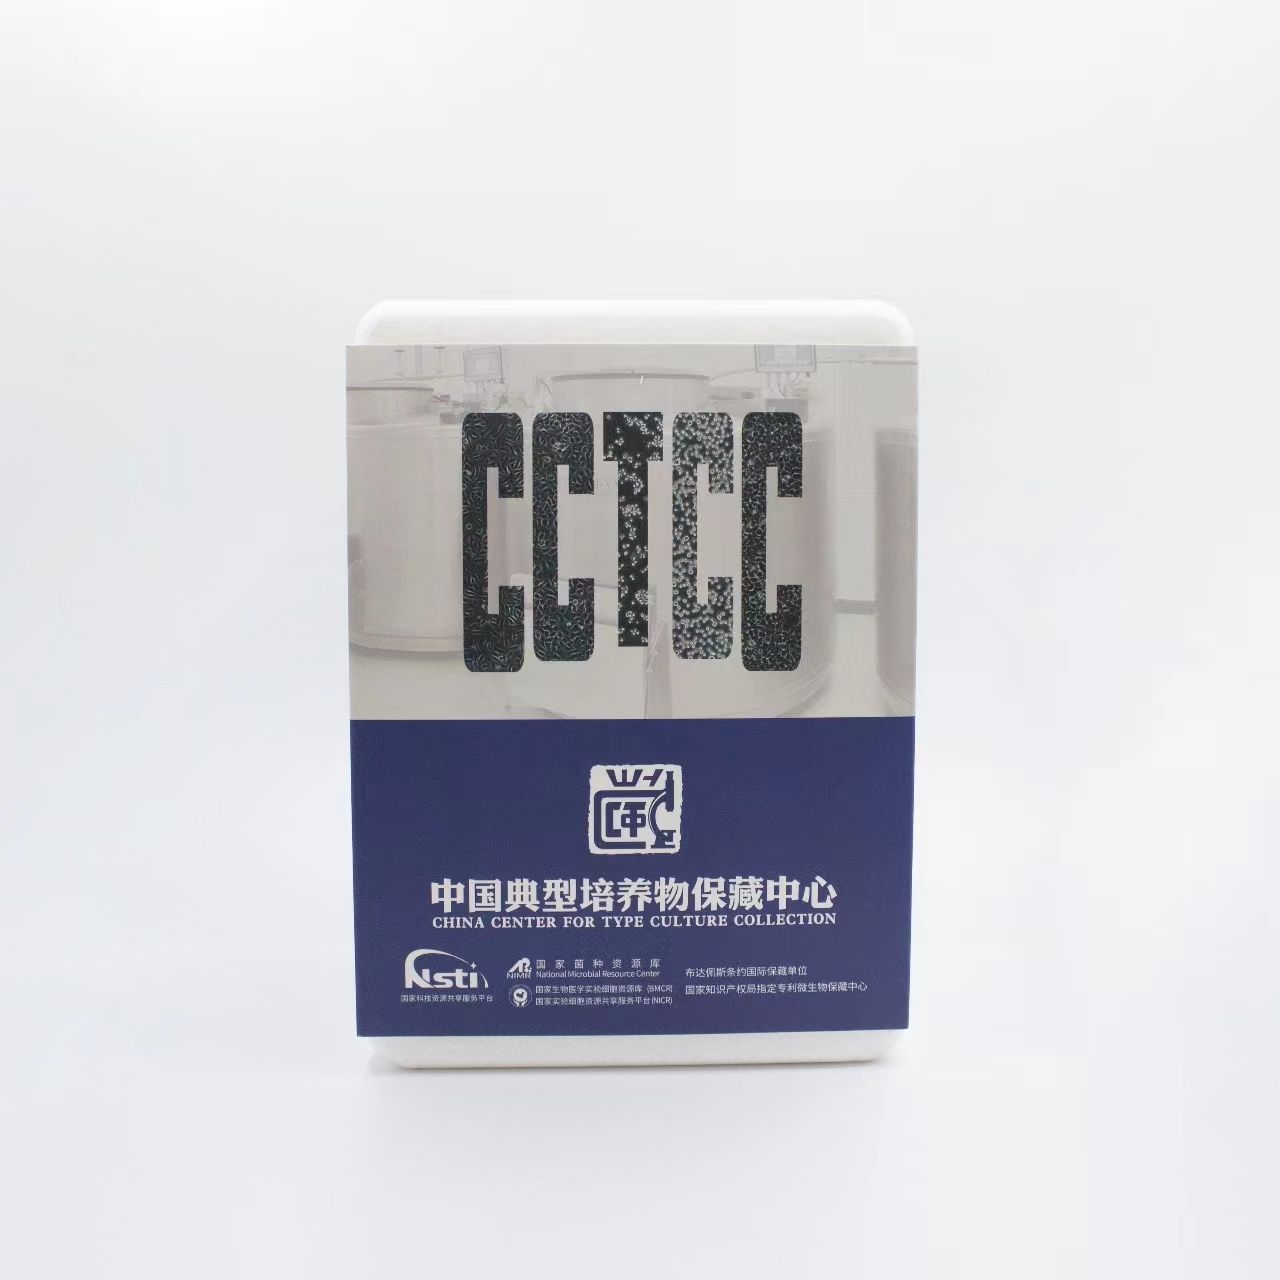 原代细胞—人/小鼠/大鼠/兔/鸡/猪/其他各种来源均可提供—中国典型培养物保藏中心（CCTCC）供应